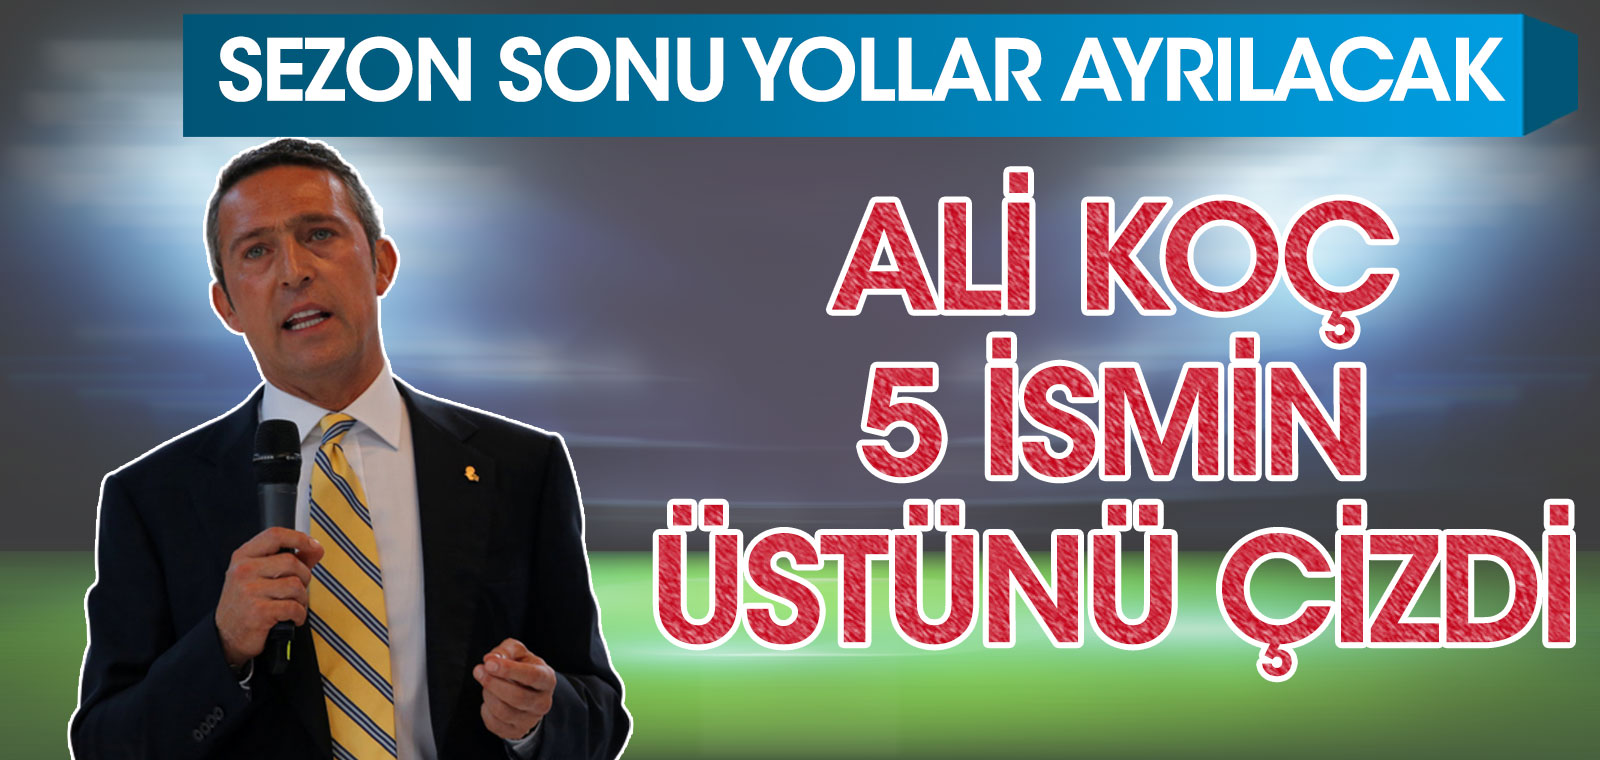 Fenerbahçe Başkanı Ali Koç 5 ismin üstünü çizdi! Sezon sezonu yollar ayrılacak